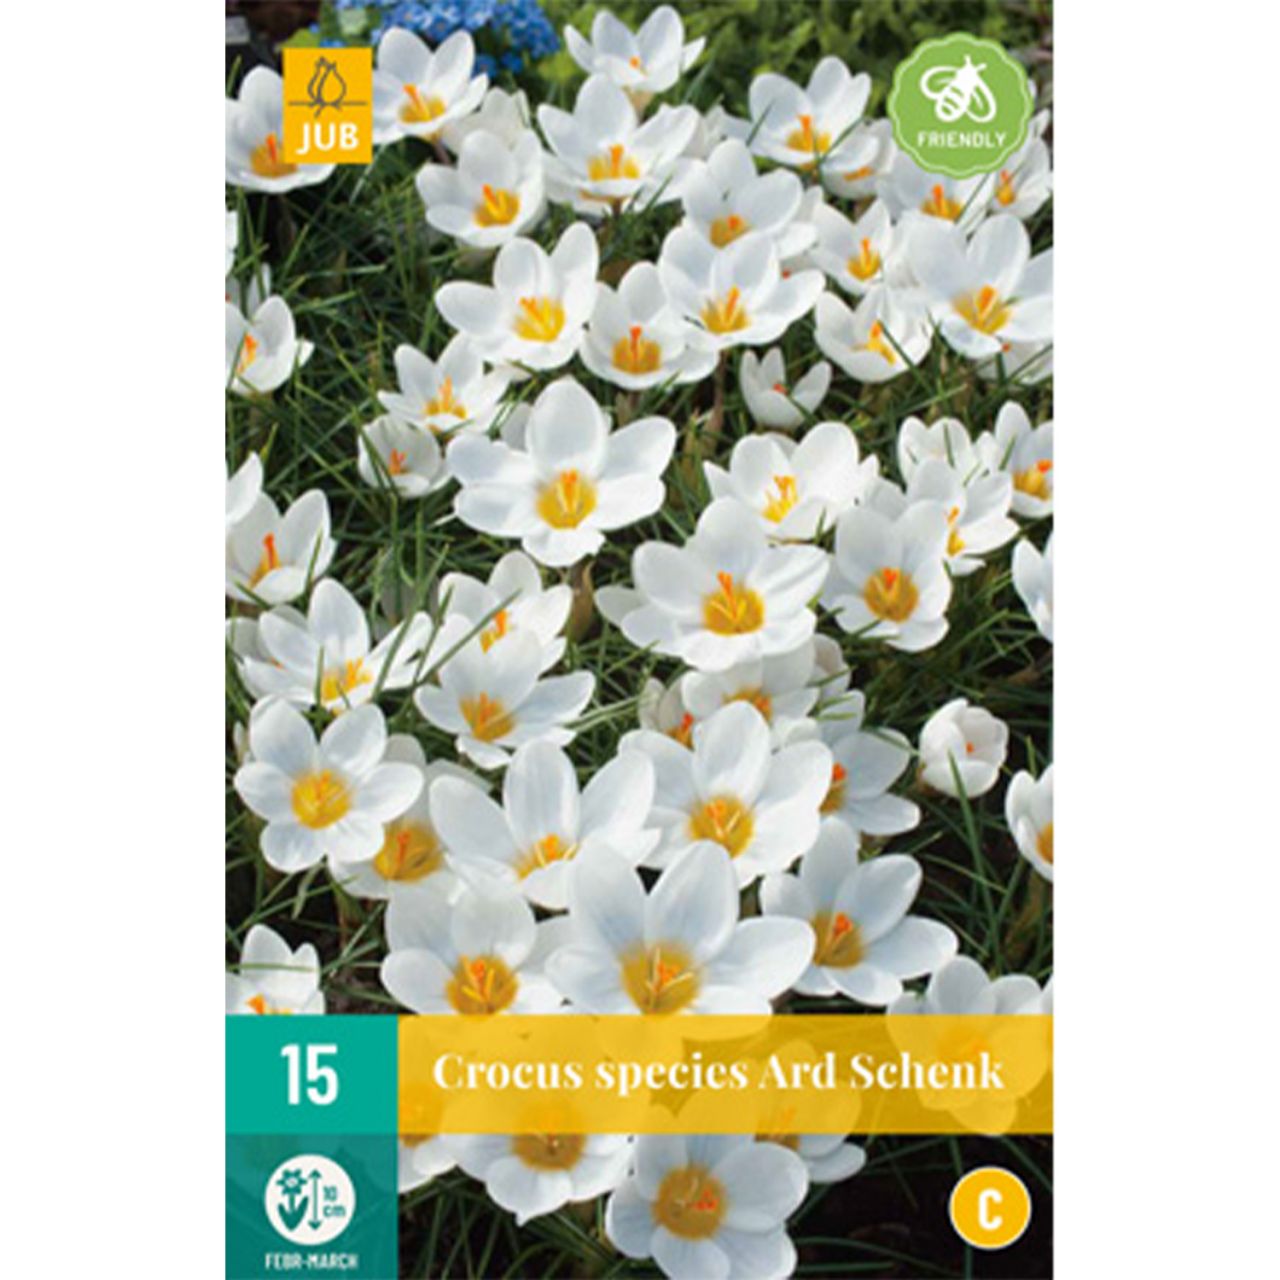 Kategorie <b>Herbst-Blumenzwiebeln </b> - Botanische Krokusse 'Ard Schenk' - 15 Stück - Crocus 'Ard Schenk'